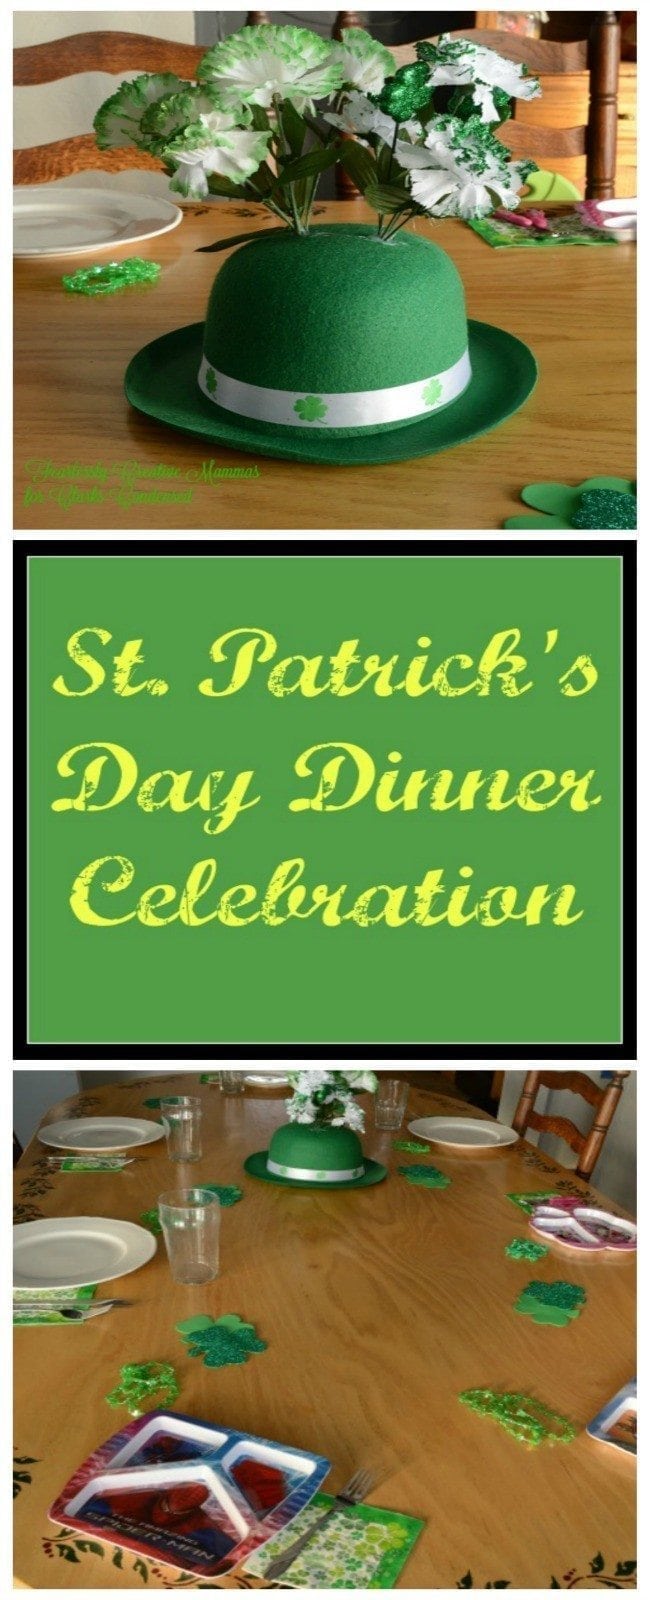 St. Patrick's Day Dinner